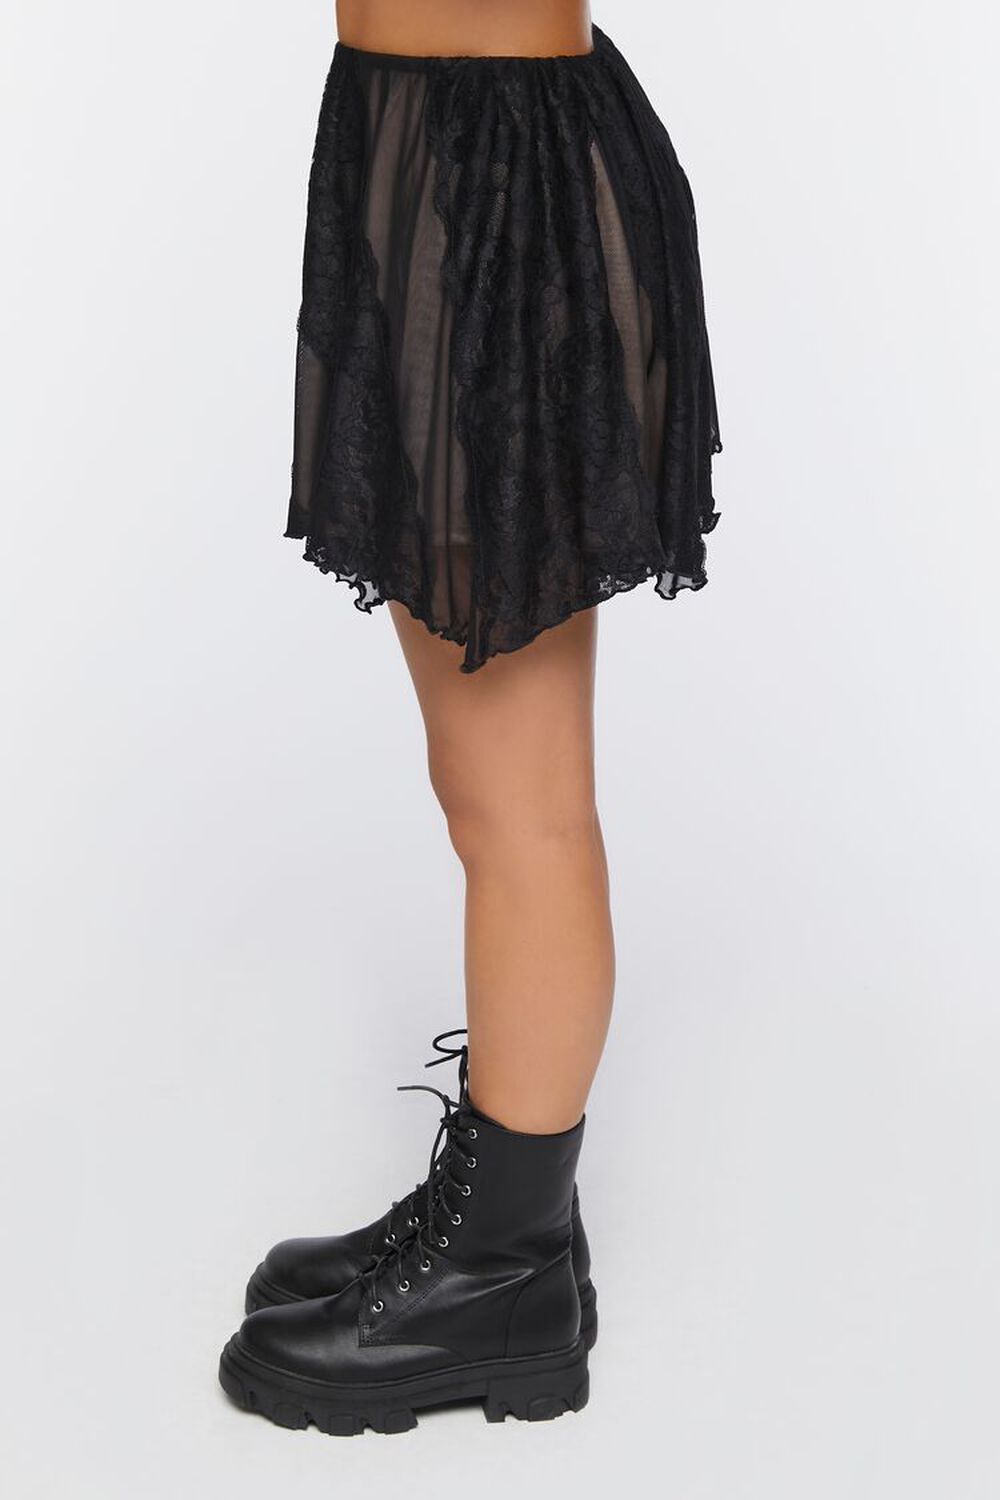 BLACK Mesh Handkerchief Mini Skirt, image 3